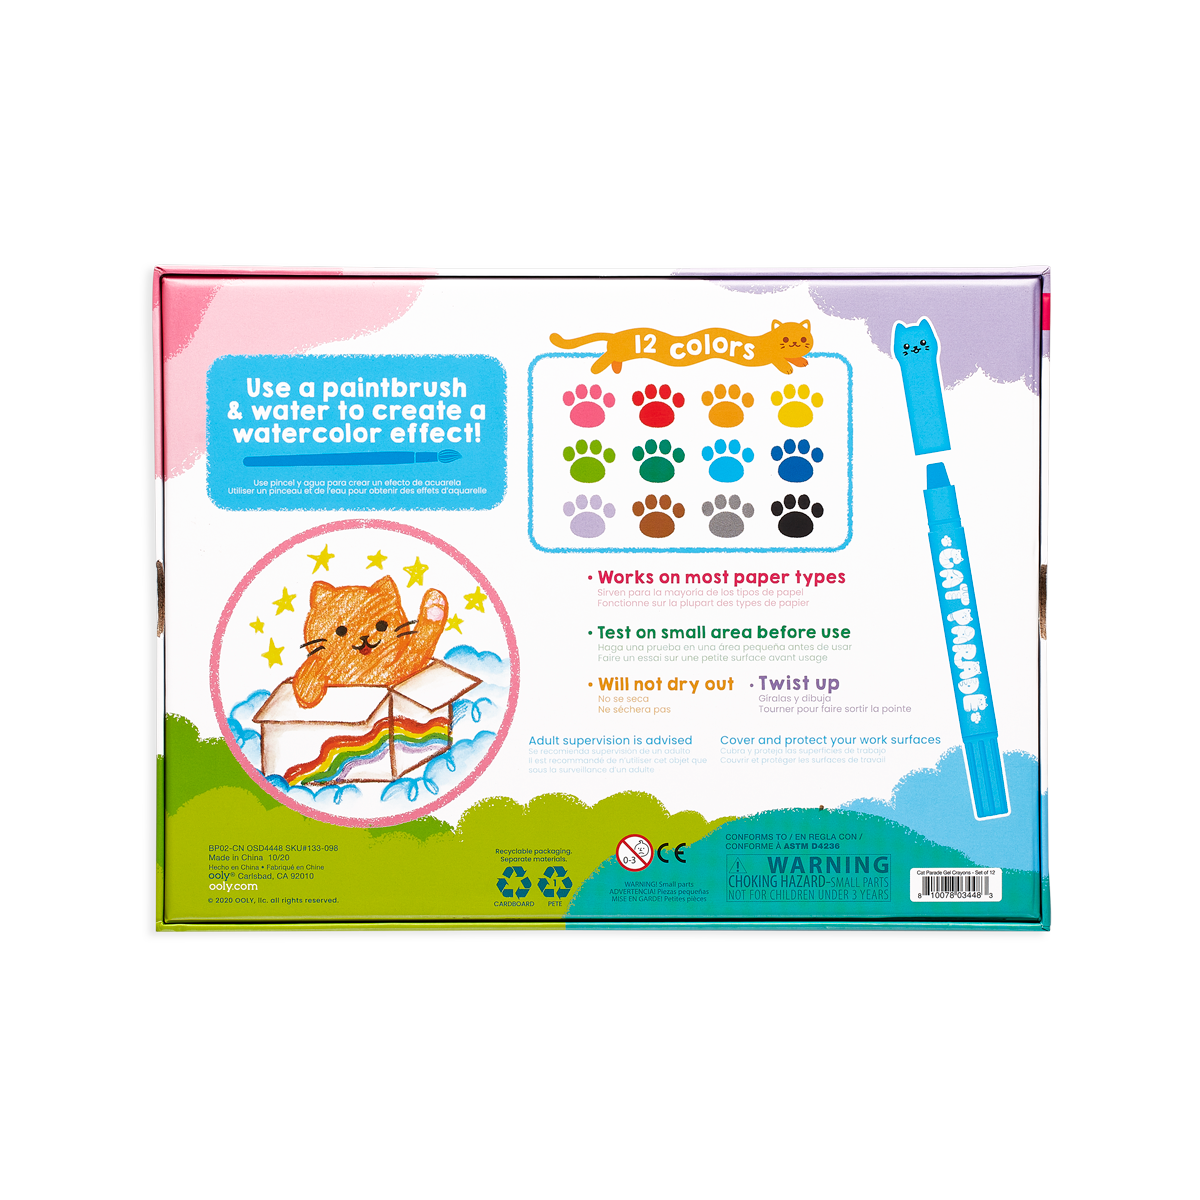 OOLY Cat Parade Gel Crayons - Set of 12 in packaging